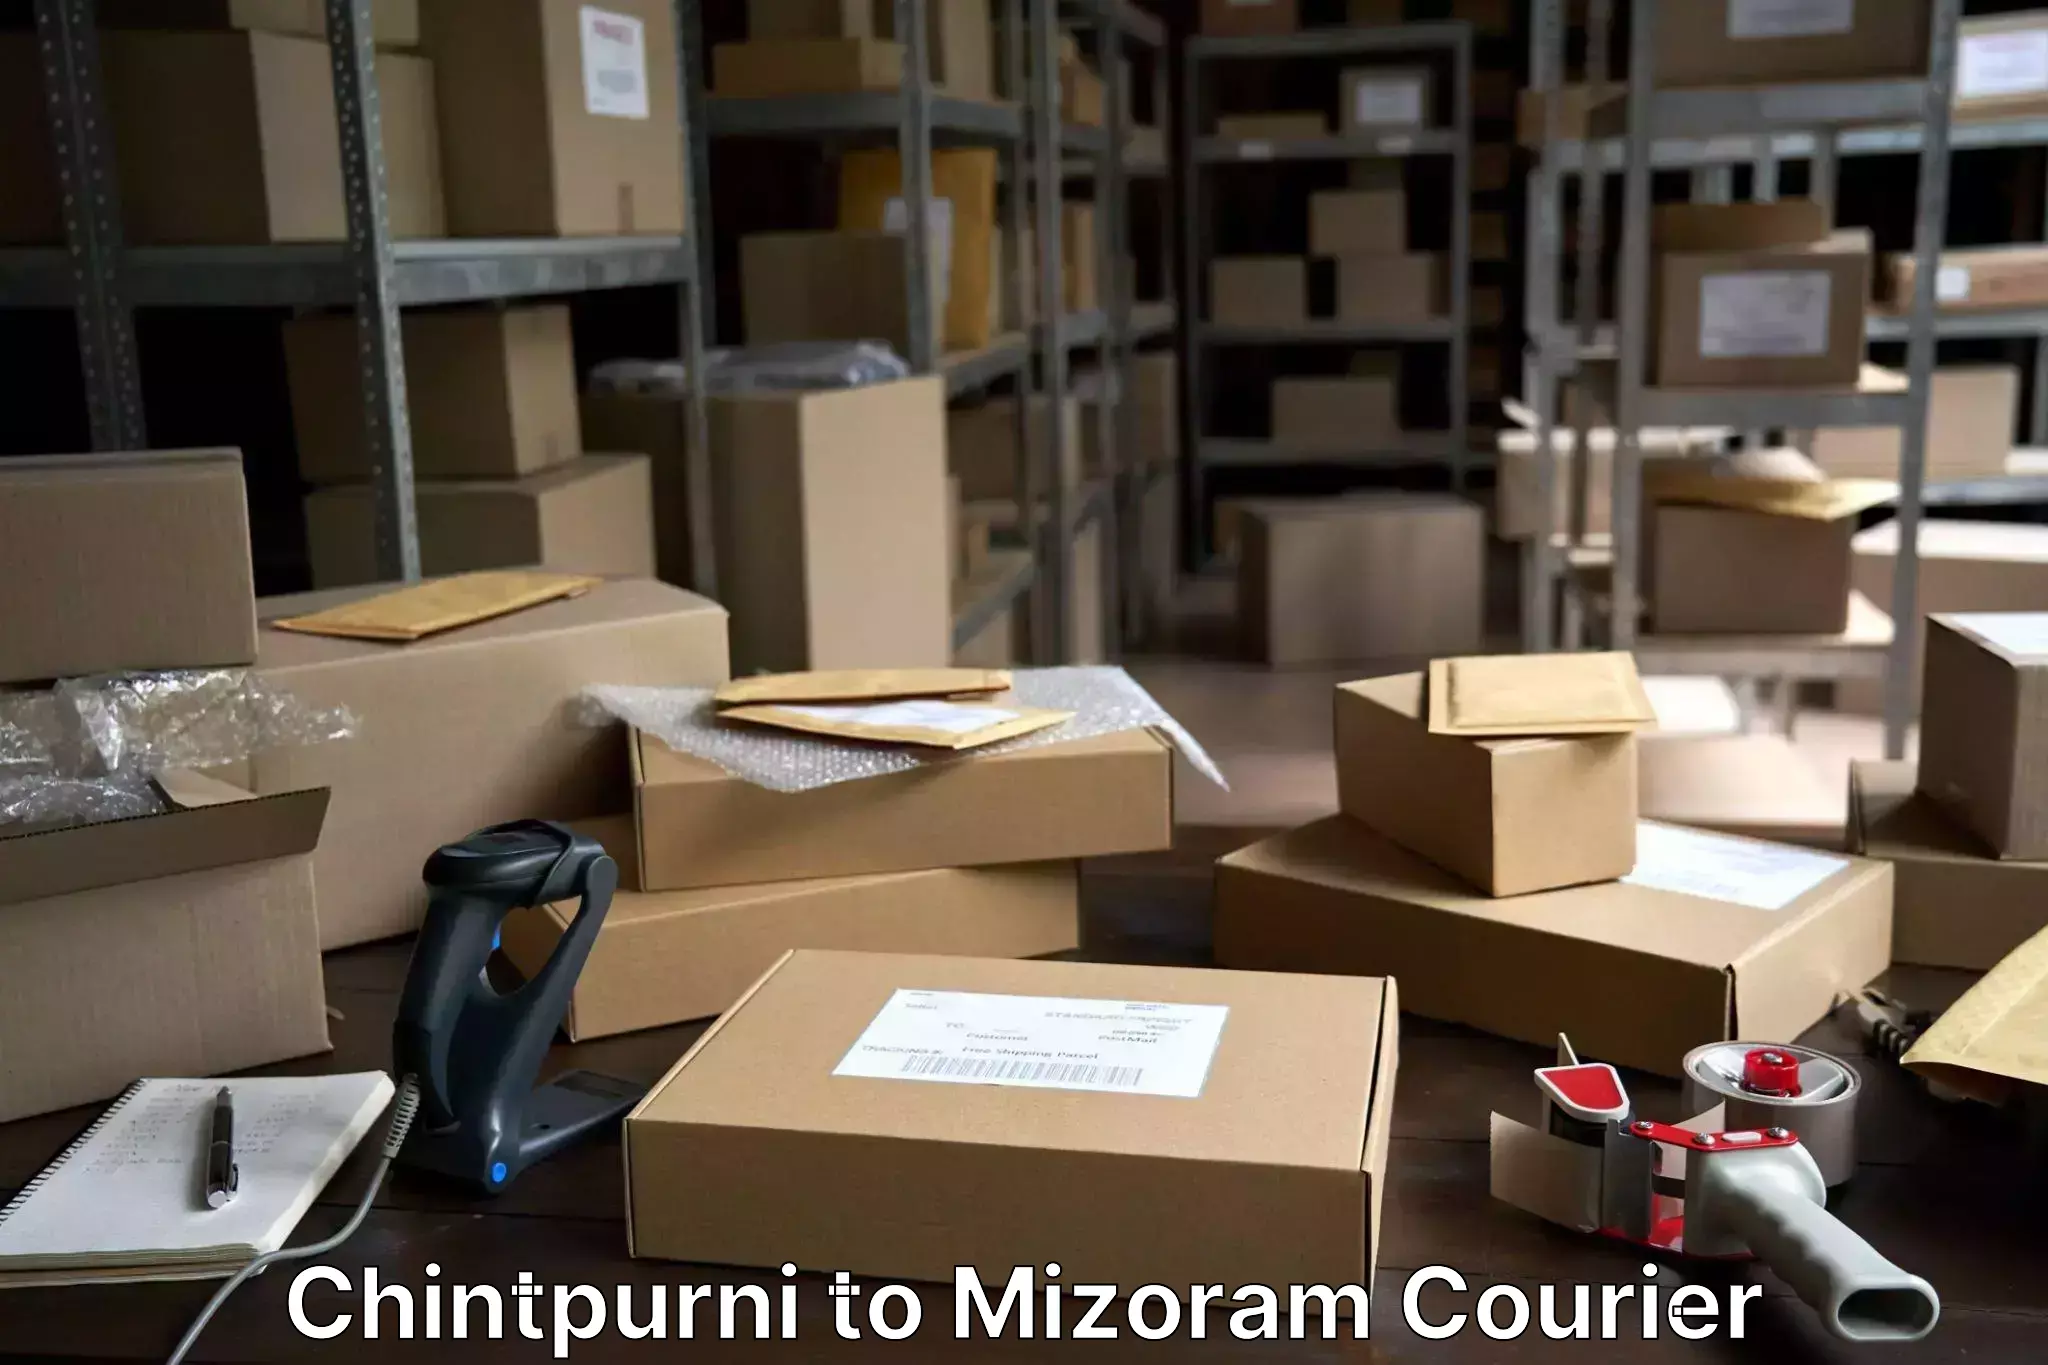 Baggage transport management Chintpurni to Mizoram